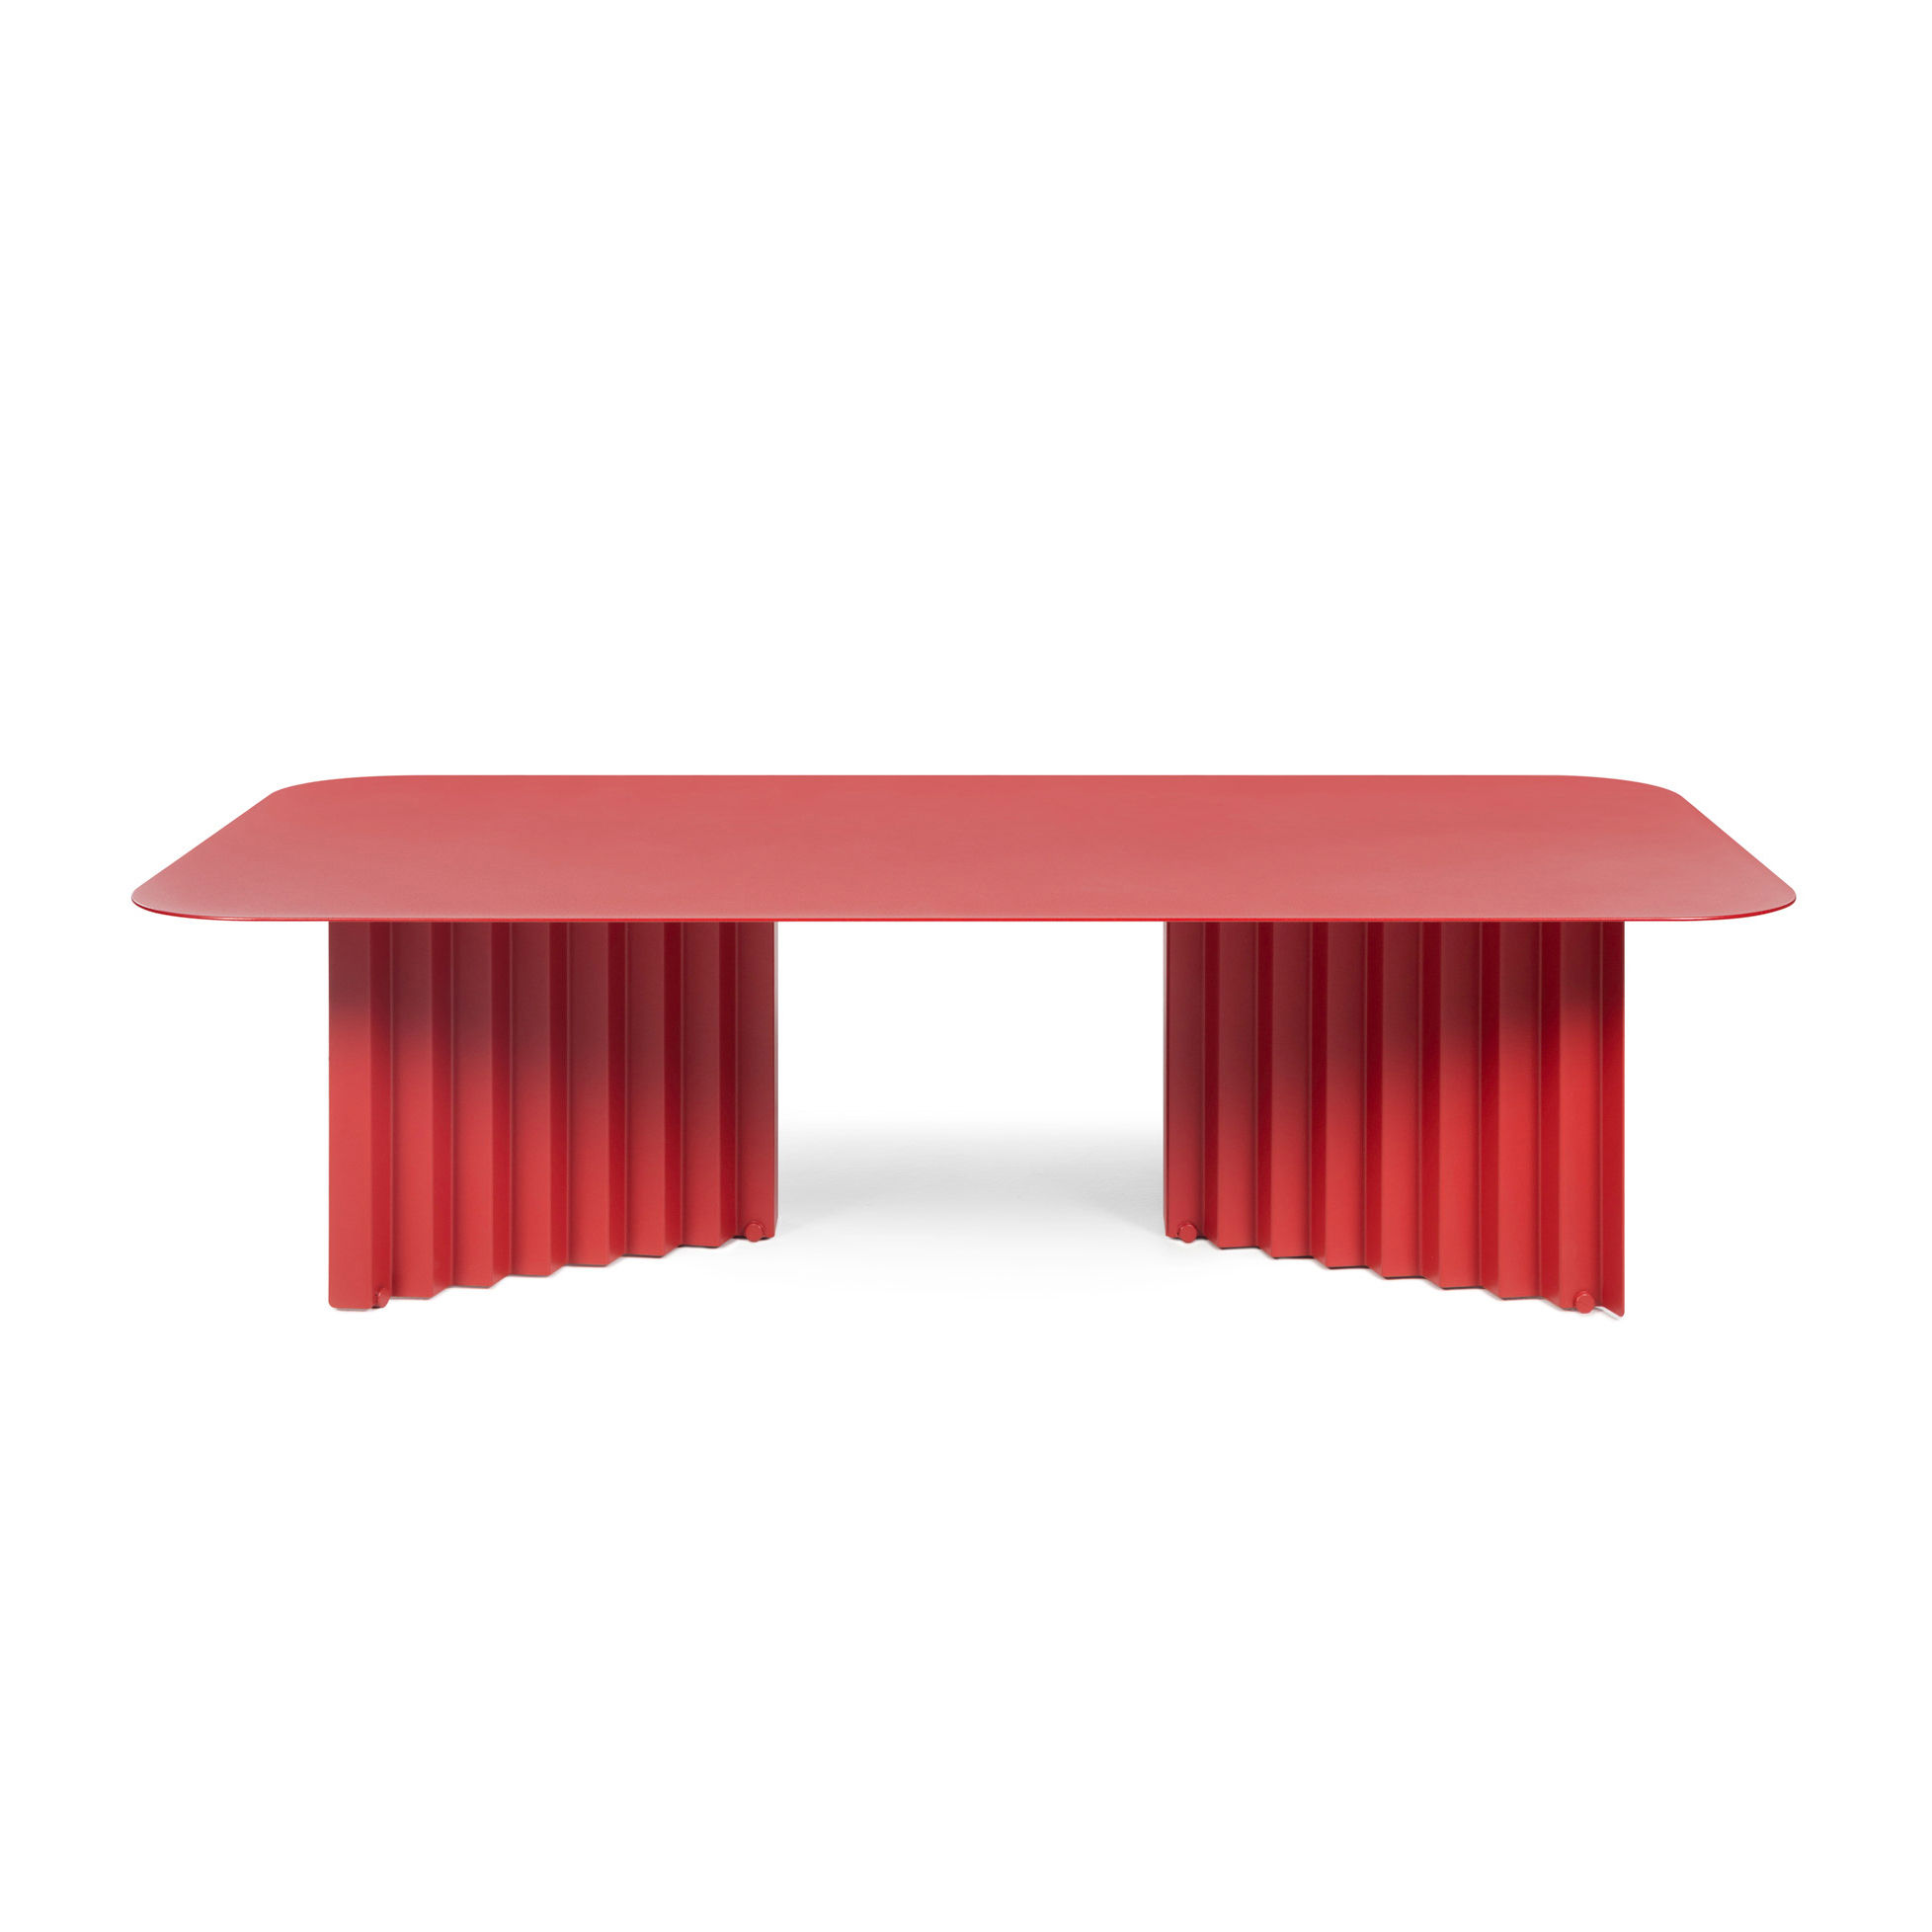 Table basse Plec Large / Acier - 115 x 60 x H 30 cm - RS BARCELONA rouge en métal